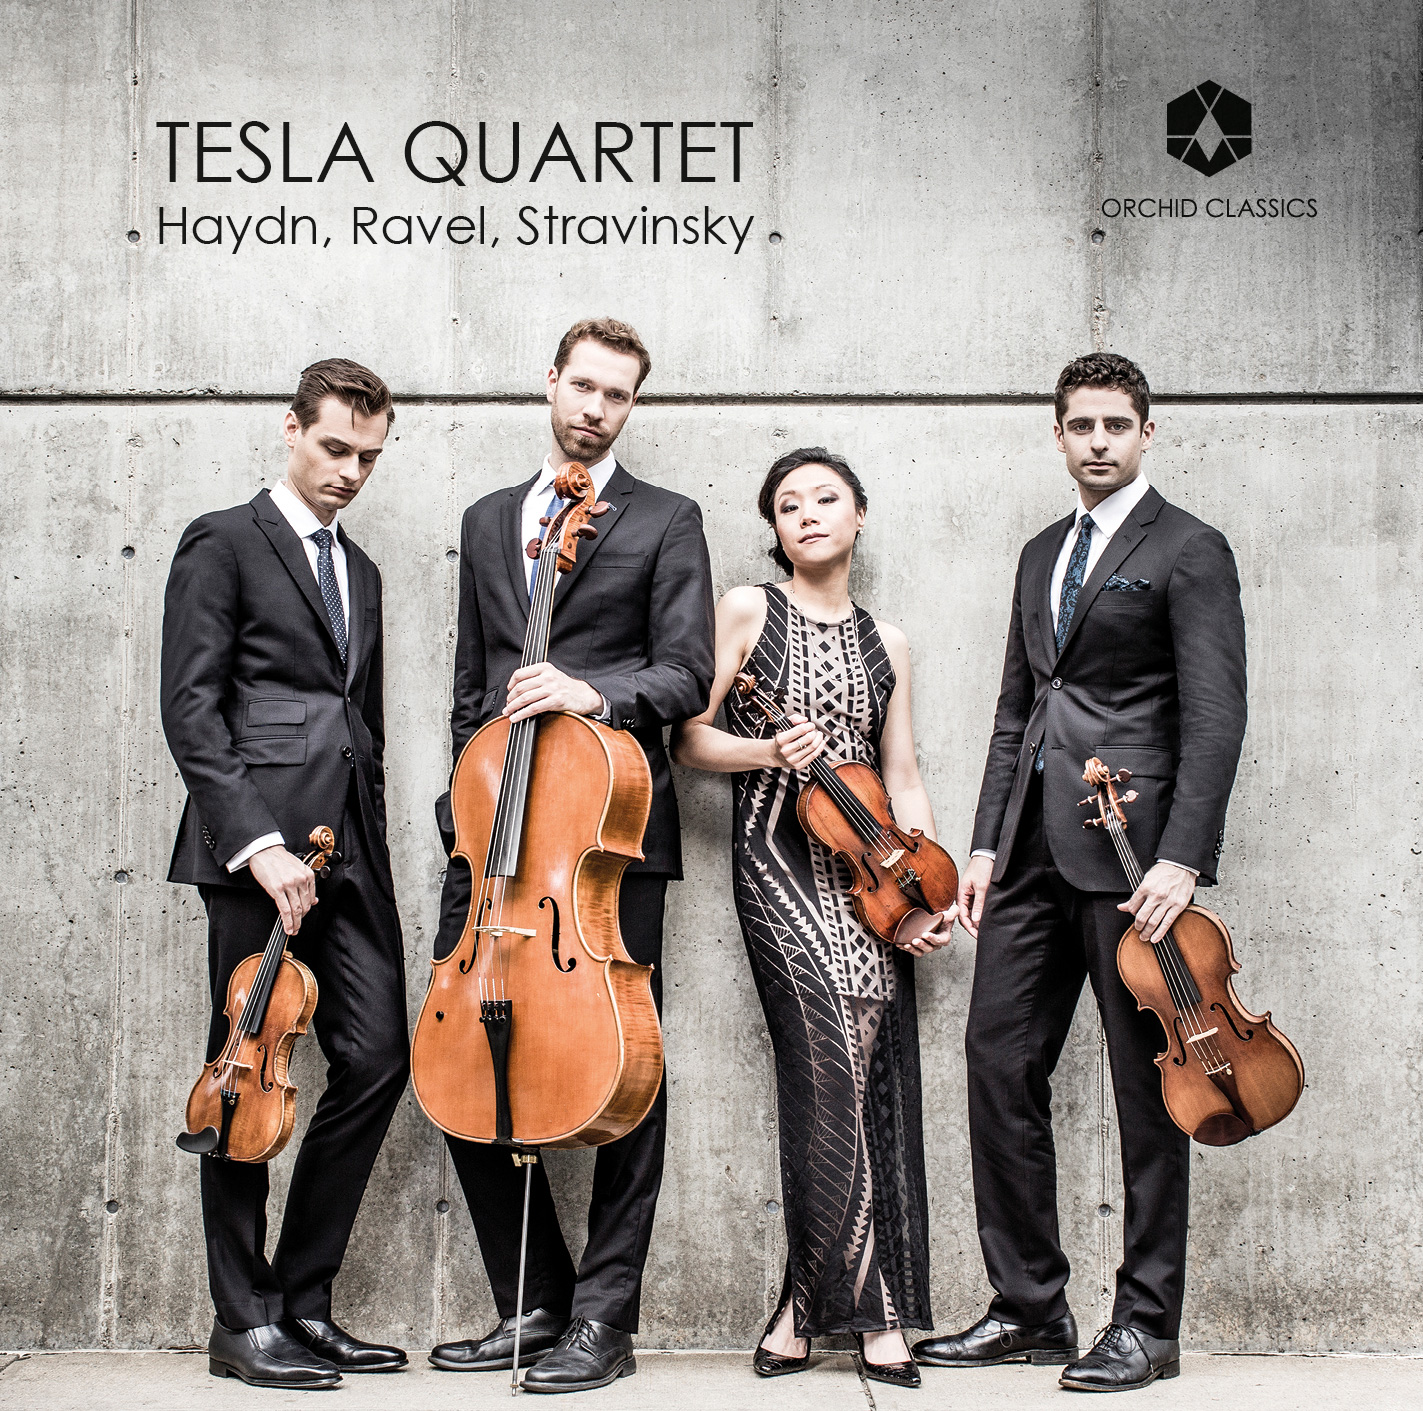 Tesla Quartet releases debut CD Haydn, Ravel, Stravinsky on